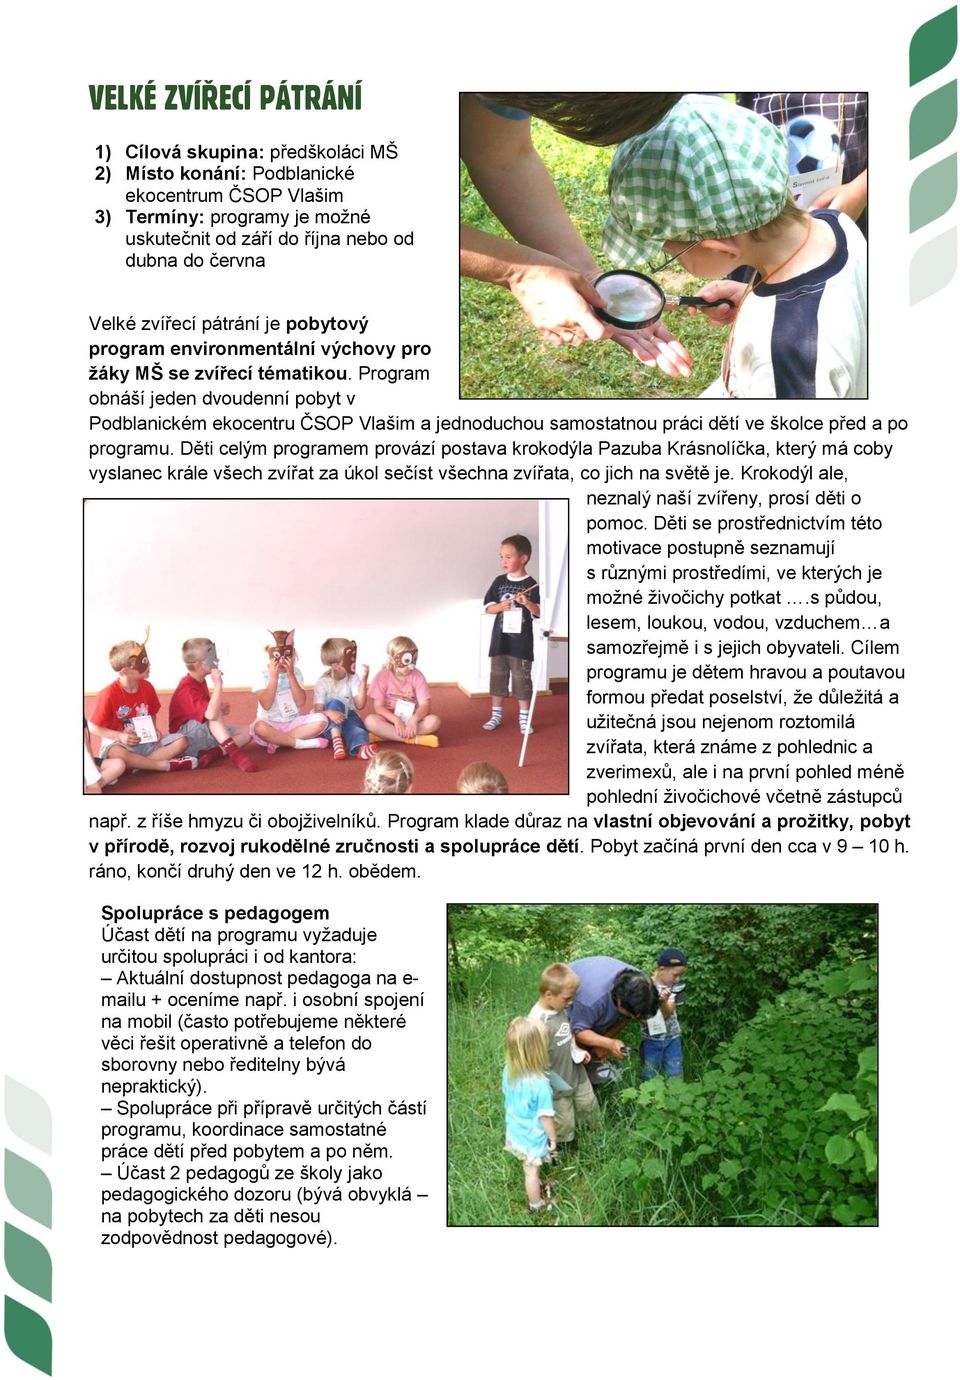 Program obnáší jeden dvoudenní pobyt v Podblanickém ekocentru ČSOP Vlašim a jednoduchou samostatnou práci dětí ve školce před a po programu.